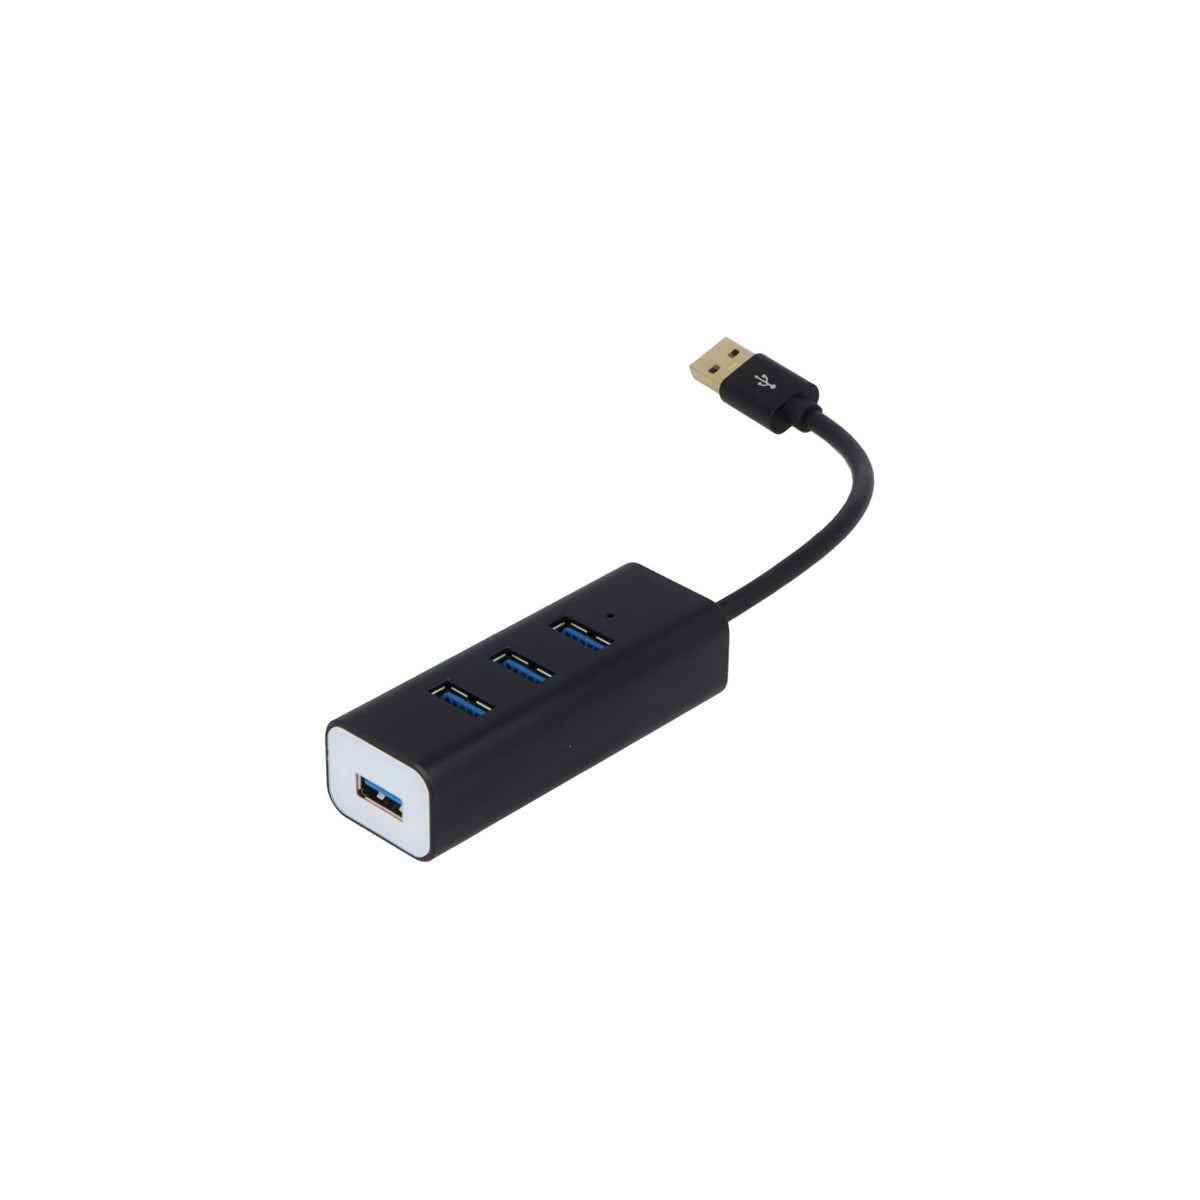 VisionTek 901437 USB 3.0 4 Port Hub